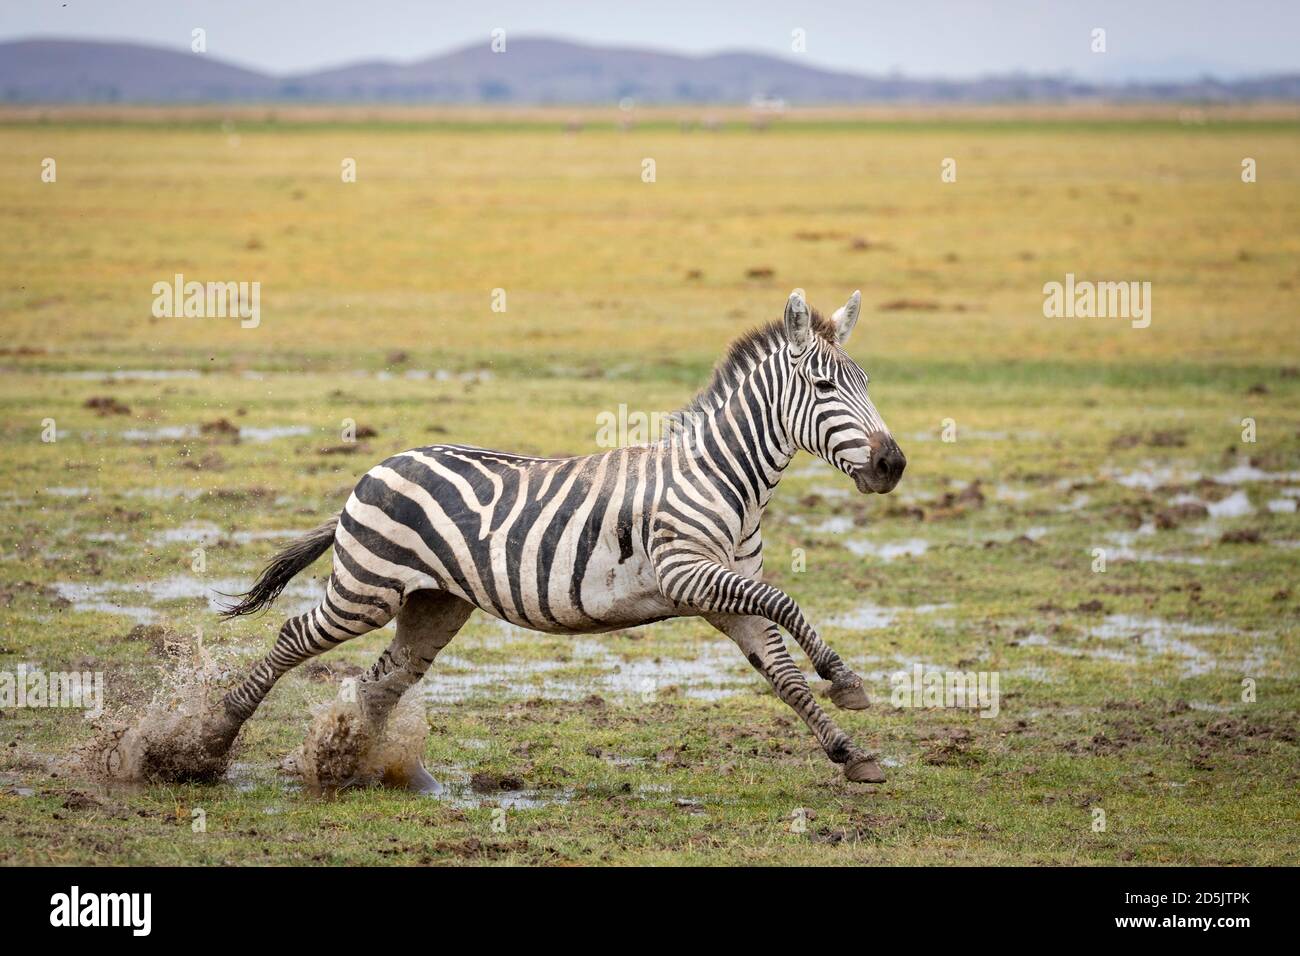 Zebra running through muddy grass in Amboseli National Park in Kenya Stock Photo